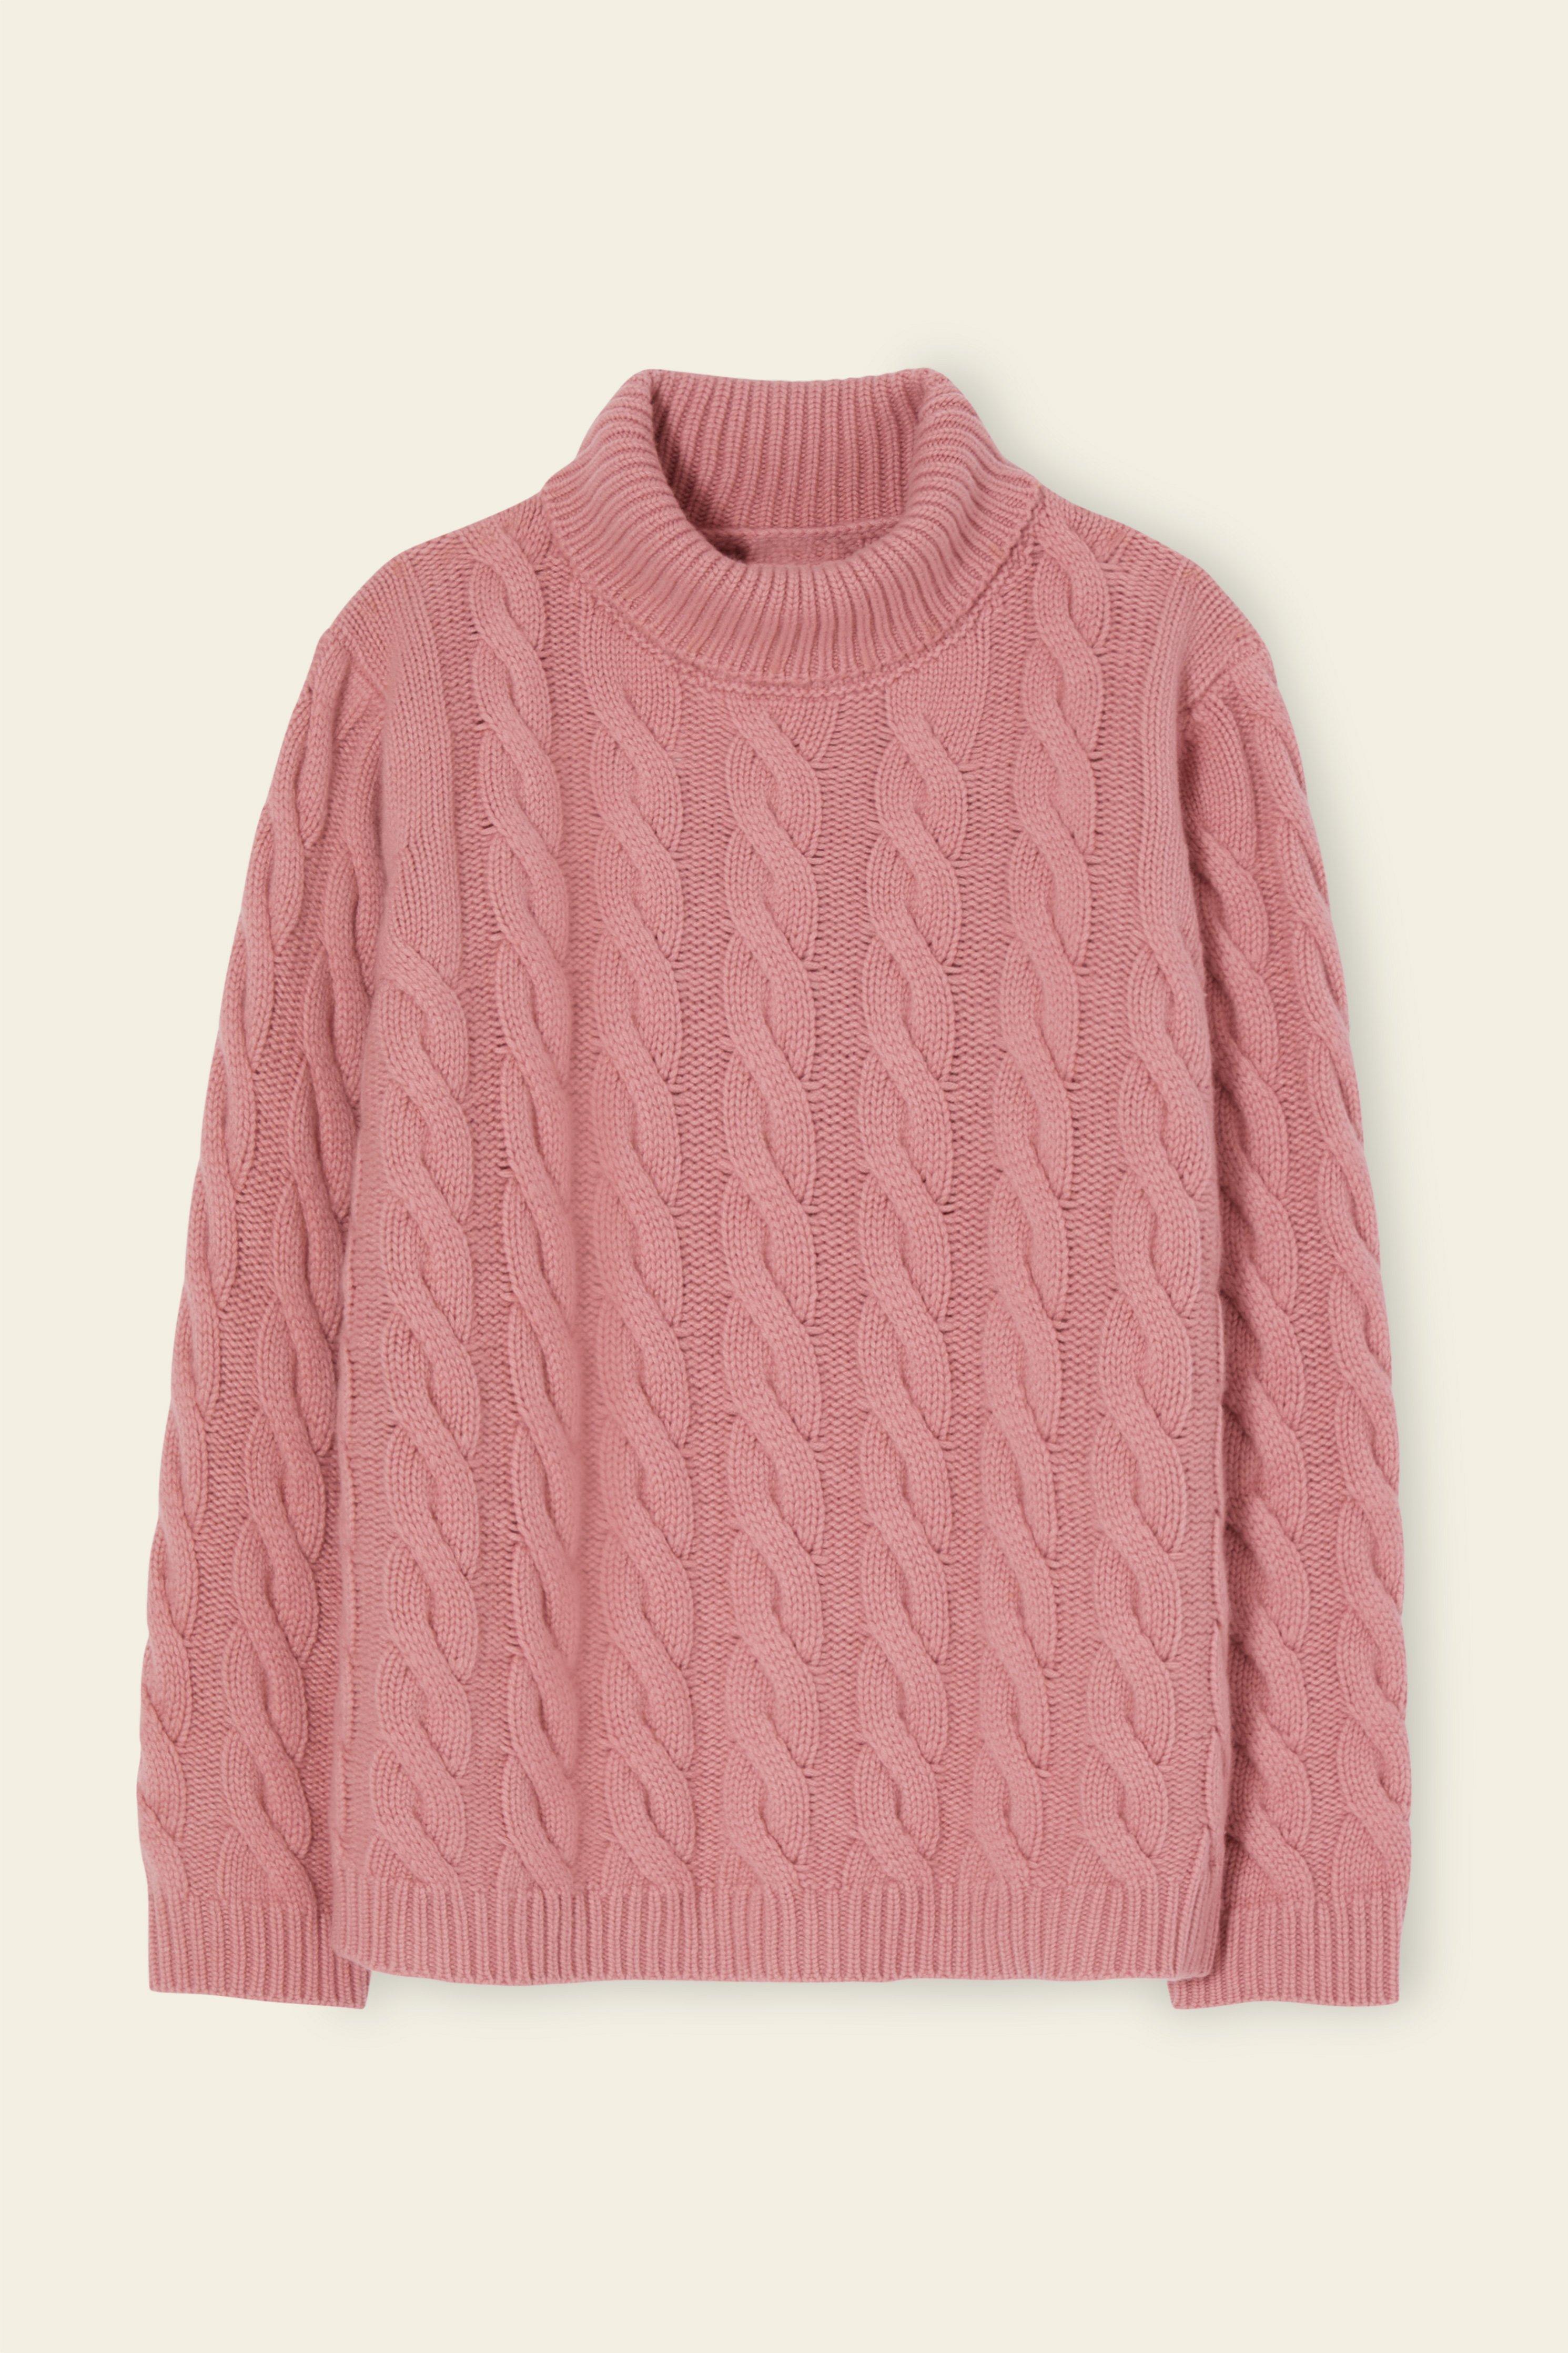 Mansur Gavriel Men's Cashmere Cable Knit Turtleneck - Rosa in Pink for ...